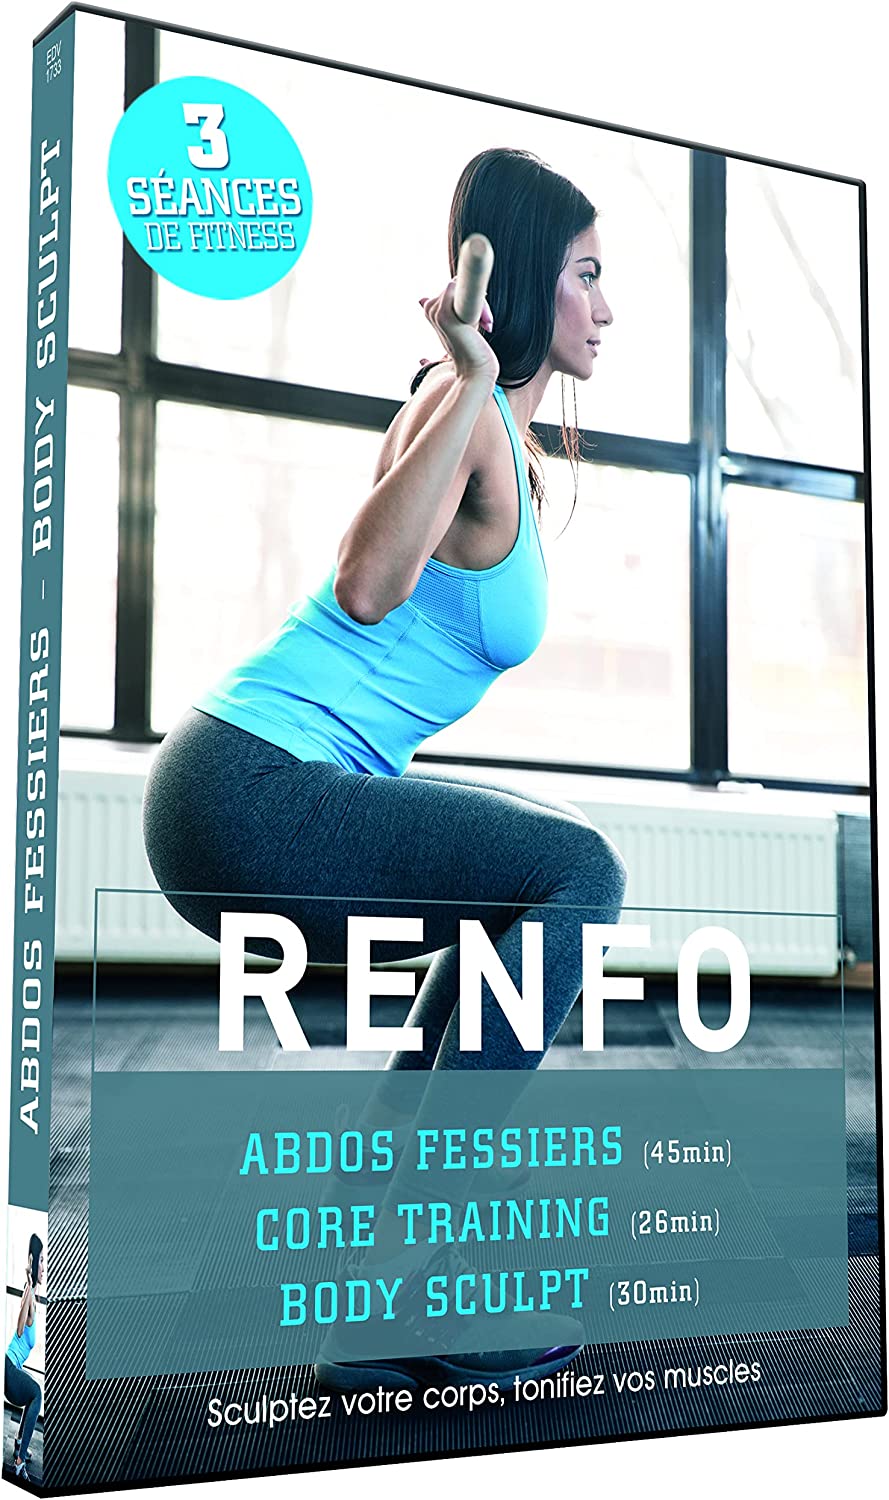 Renfo : Abdos fessiers + Core Training + Body Sculpt